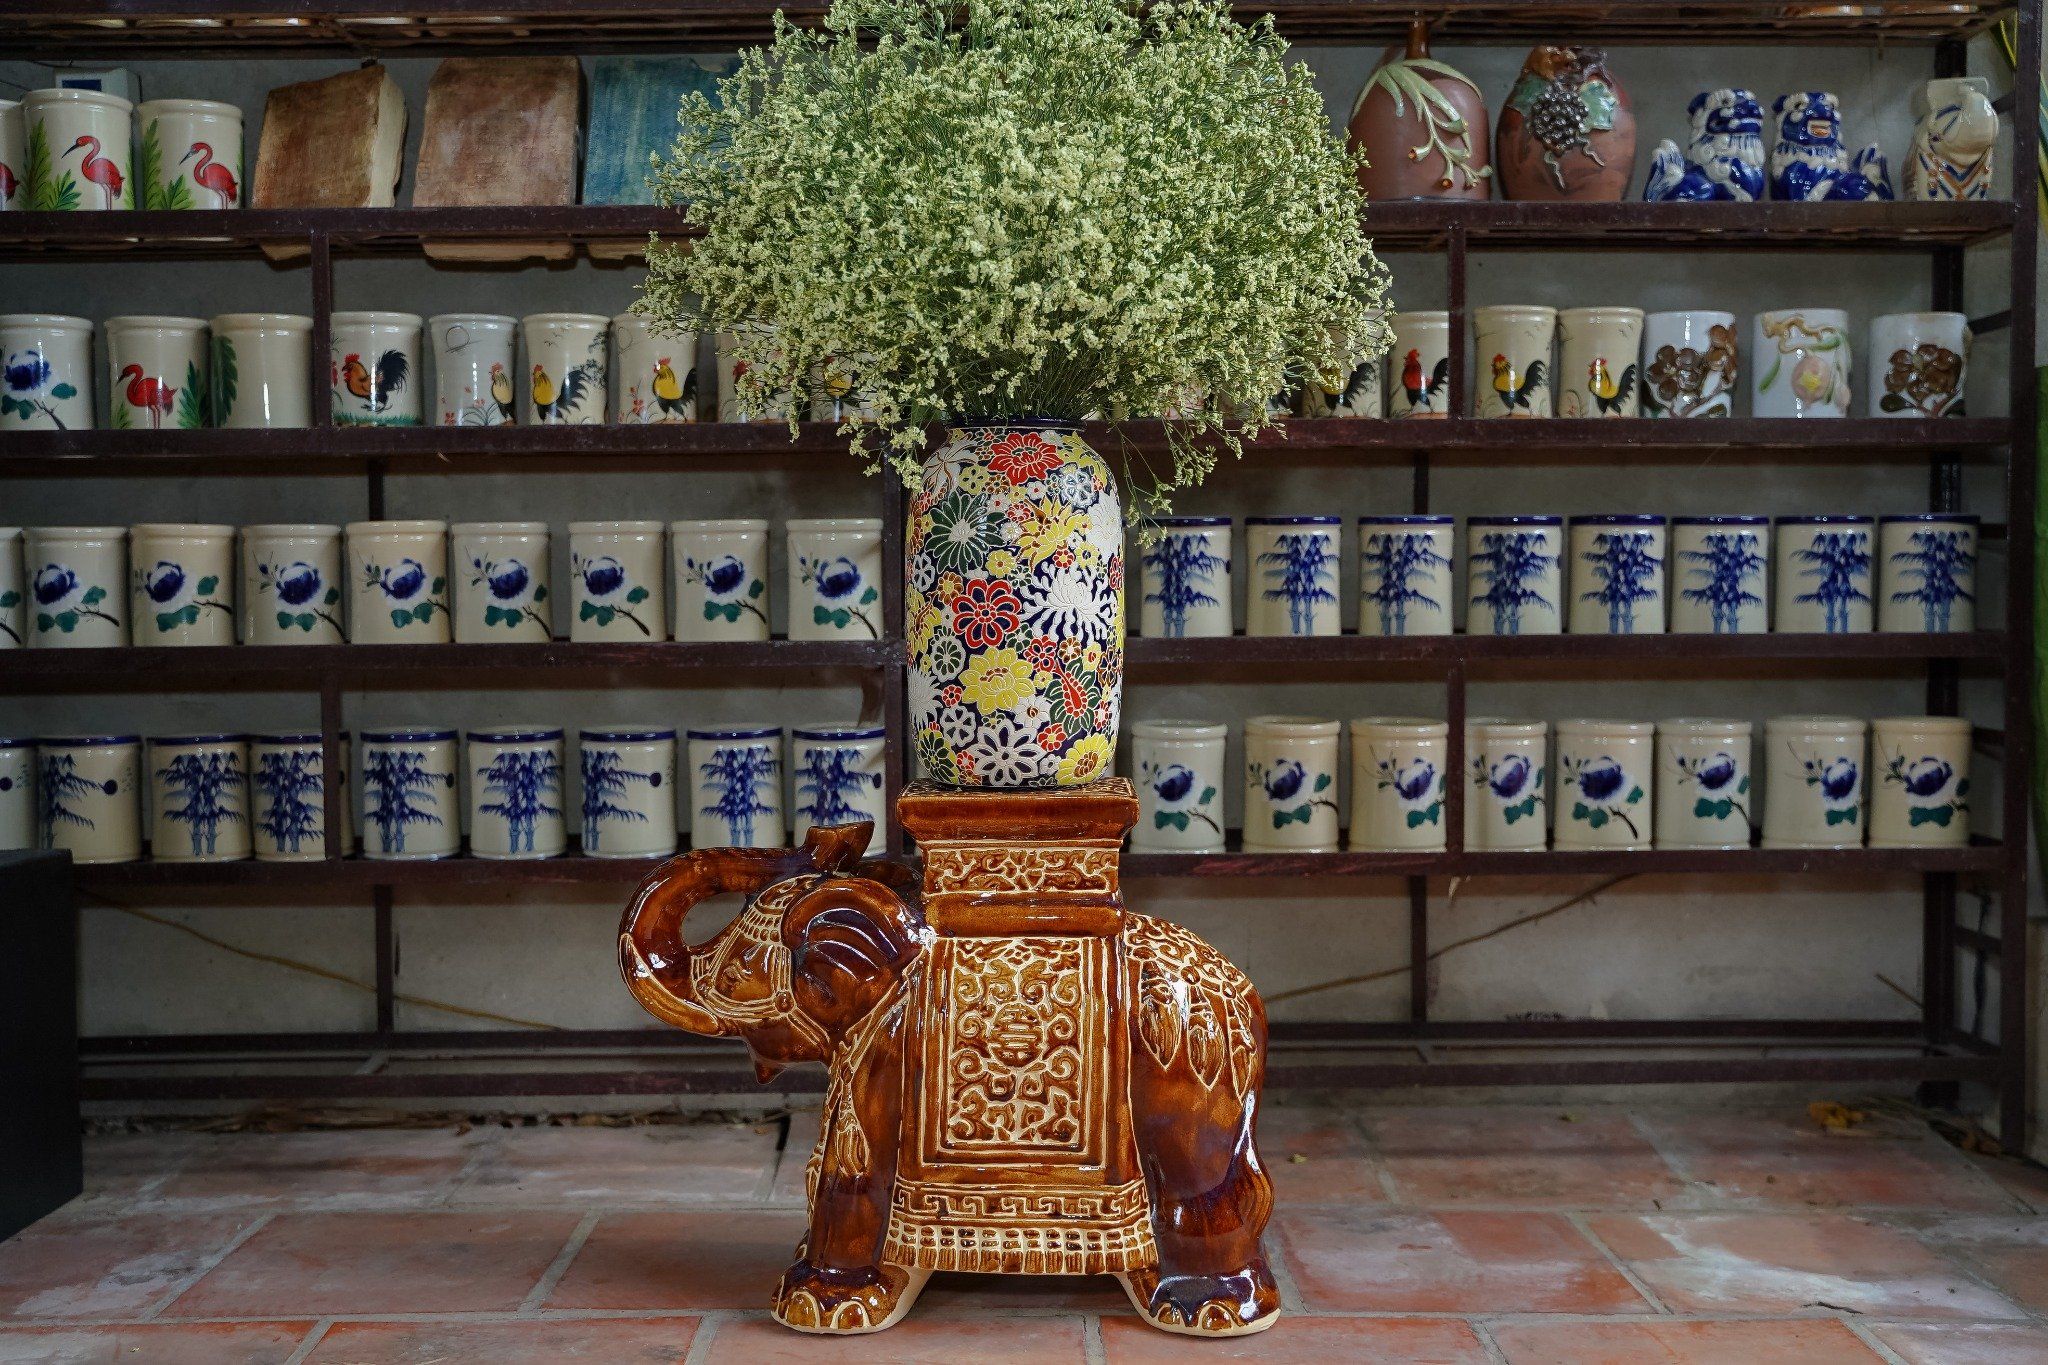  Đôn voi truyền thống, gốm Nam Bộ, gợi nhớ ký ức, nâu và nhiều màu sắc, C43 x R50cm 